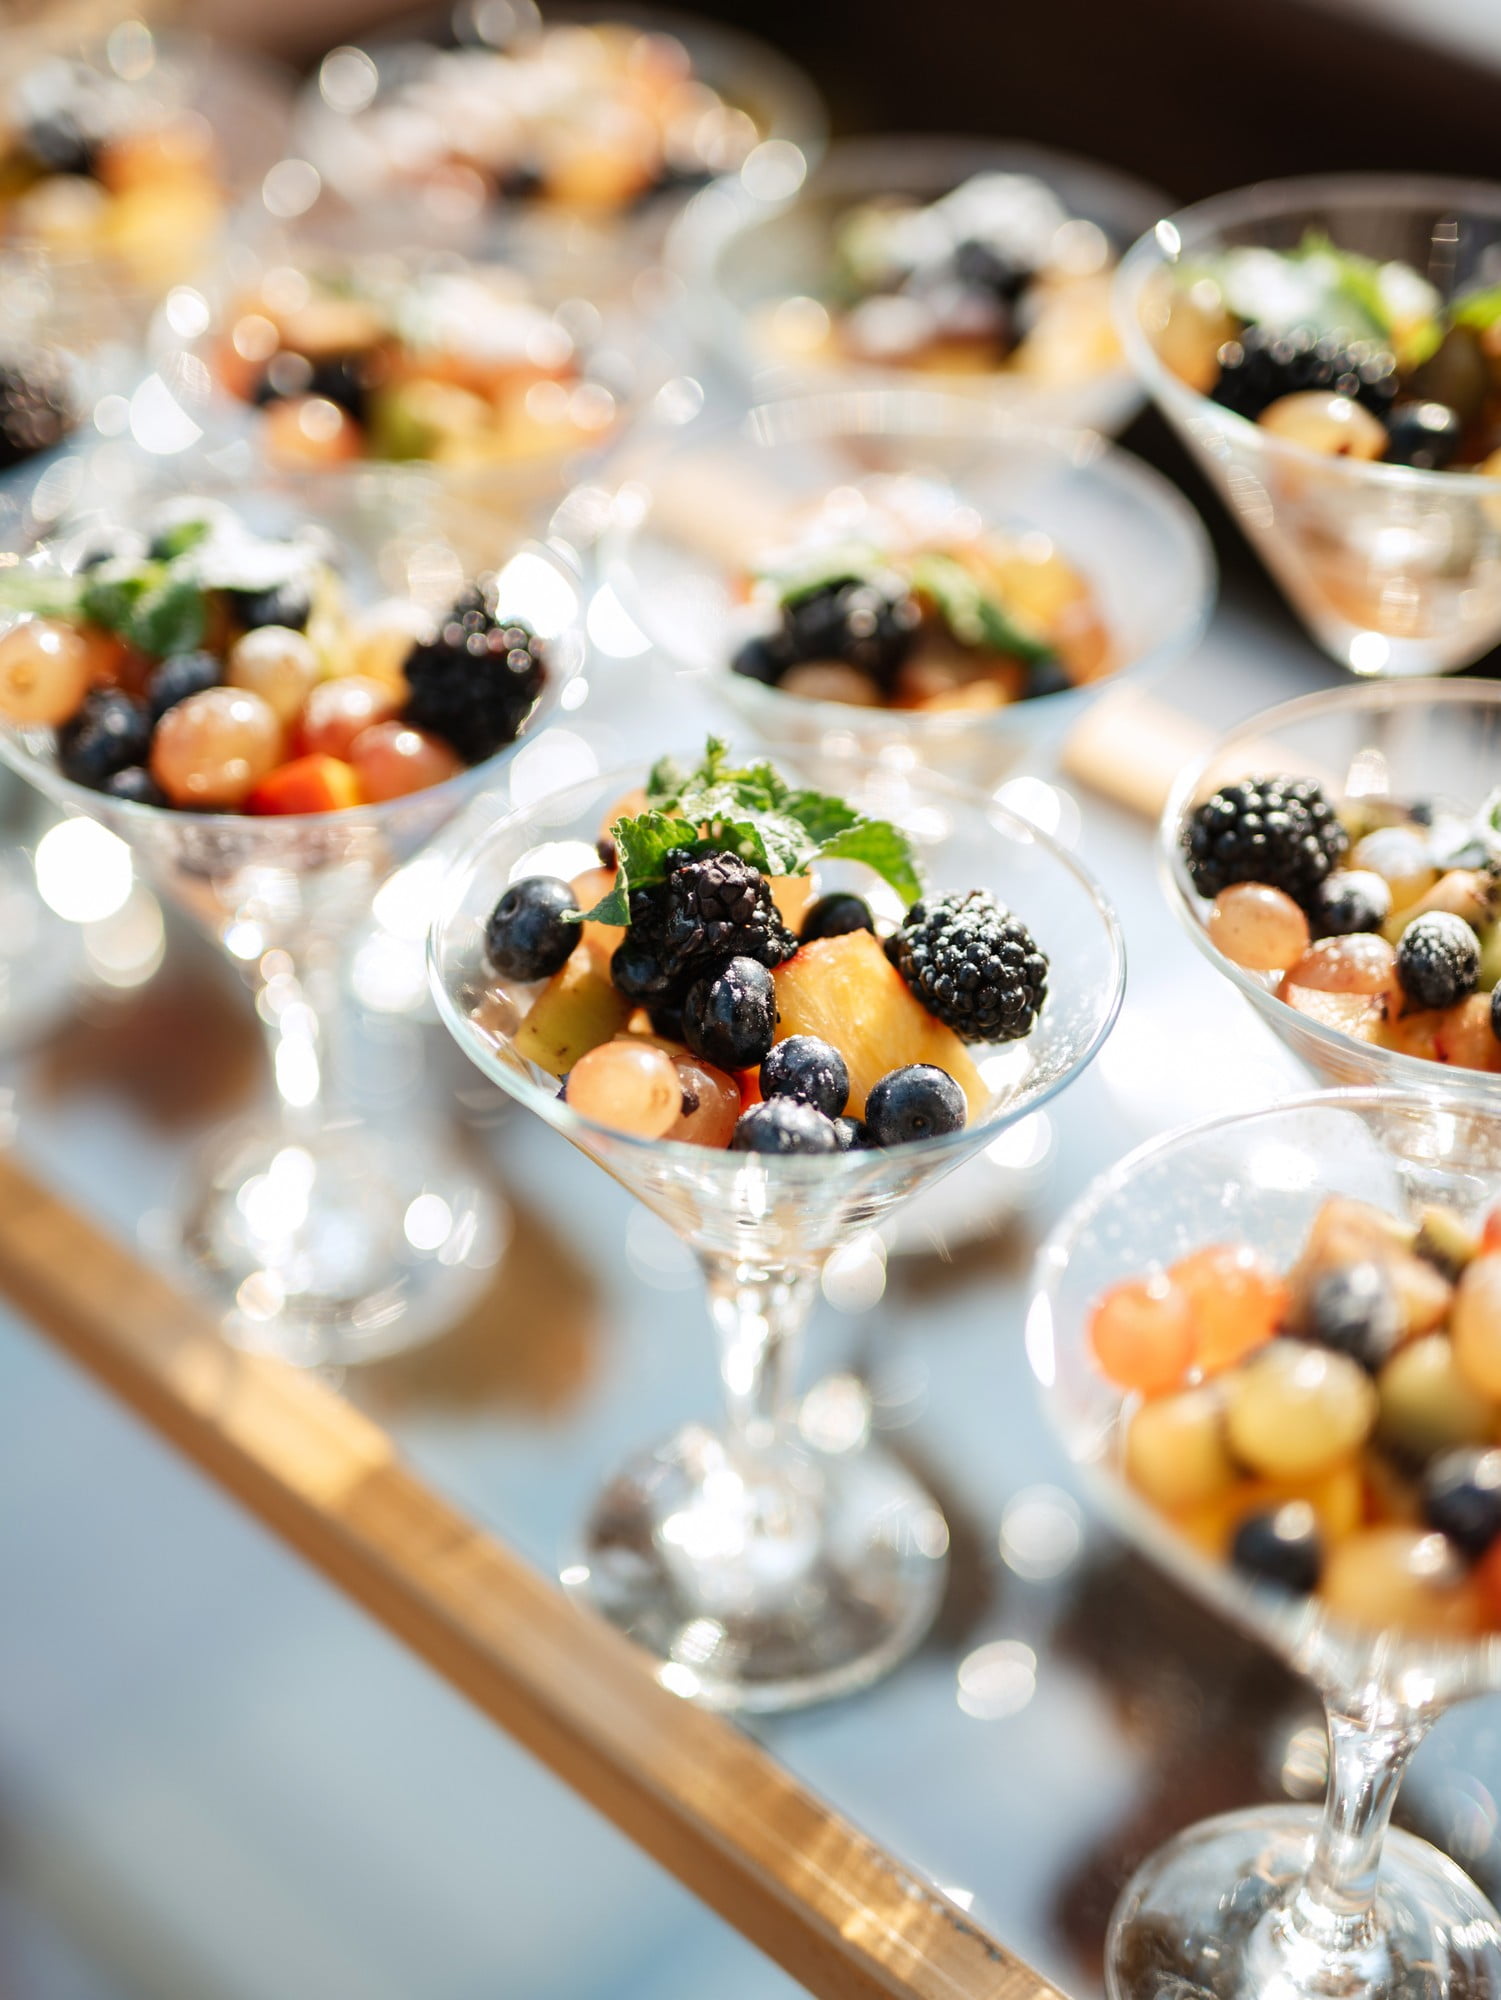 Občerstvení na garden party můžete servírovat stylově – například ve skleničkách.